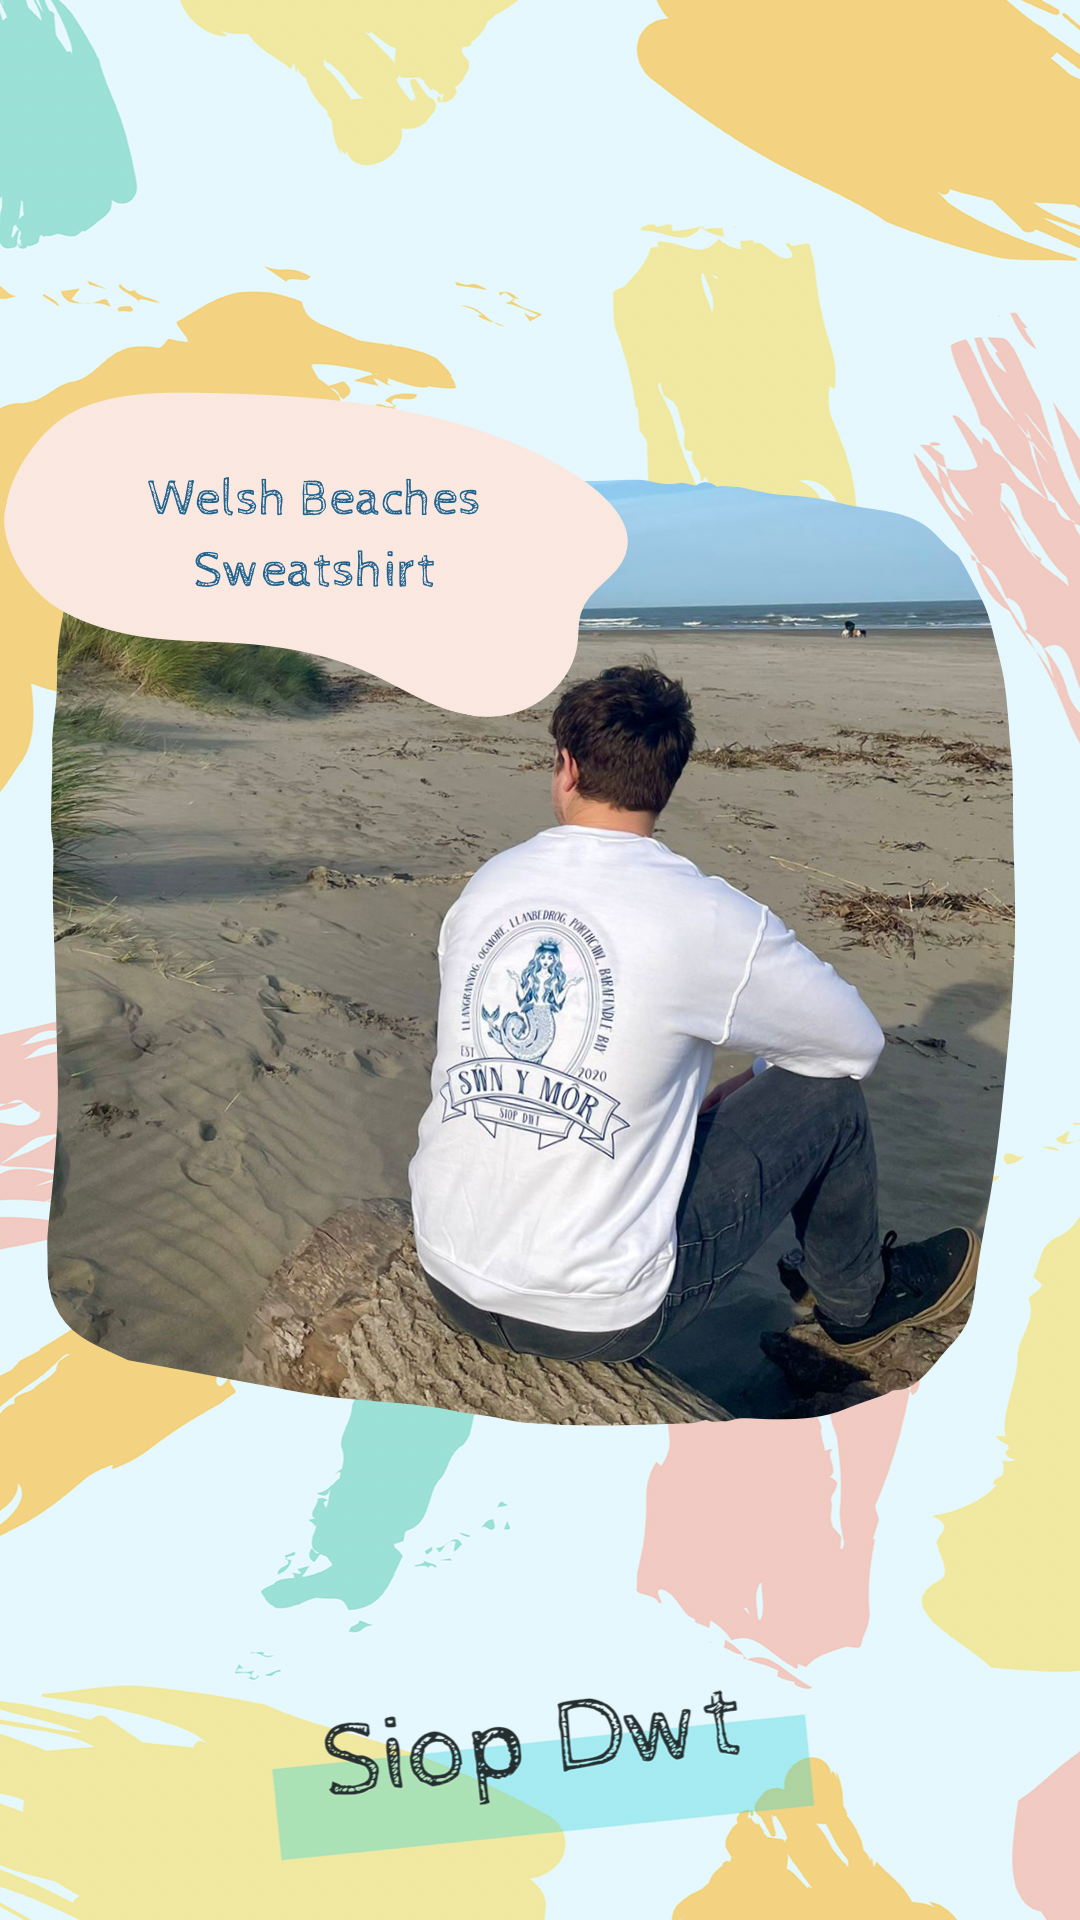 Welsh Language Jumper ‘Sŵn Y Môr’ (Sound of the Sea) with mermaid design l anrhegion Cymraeg